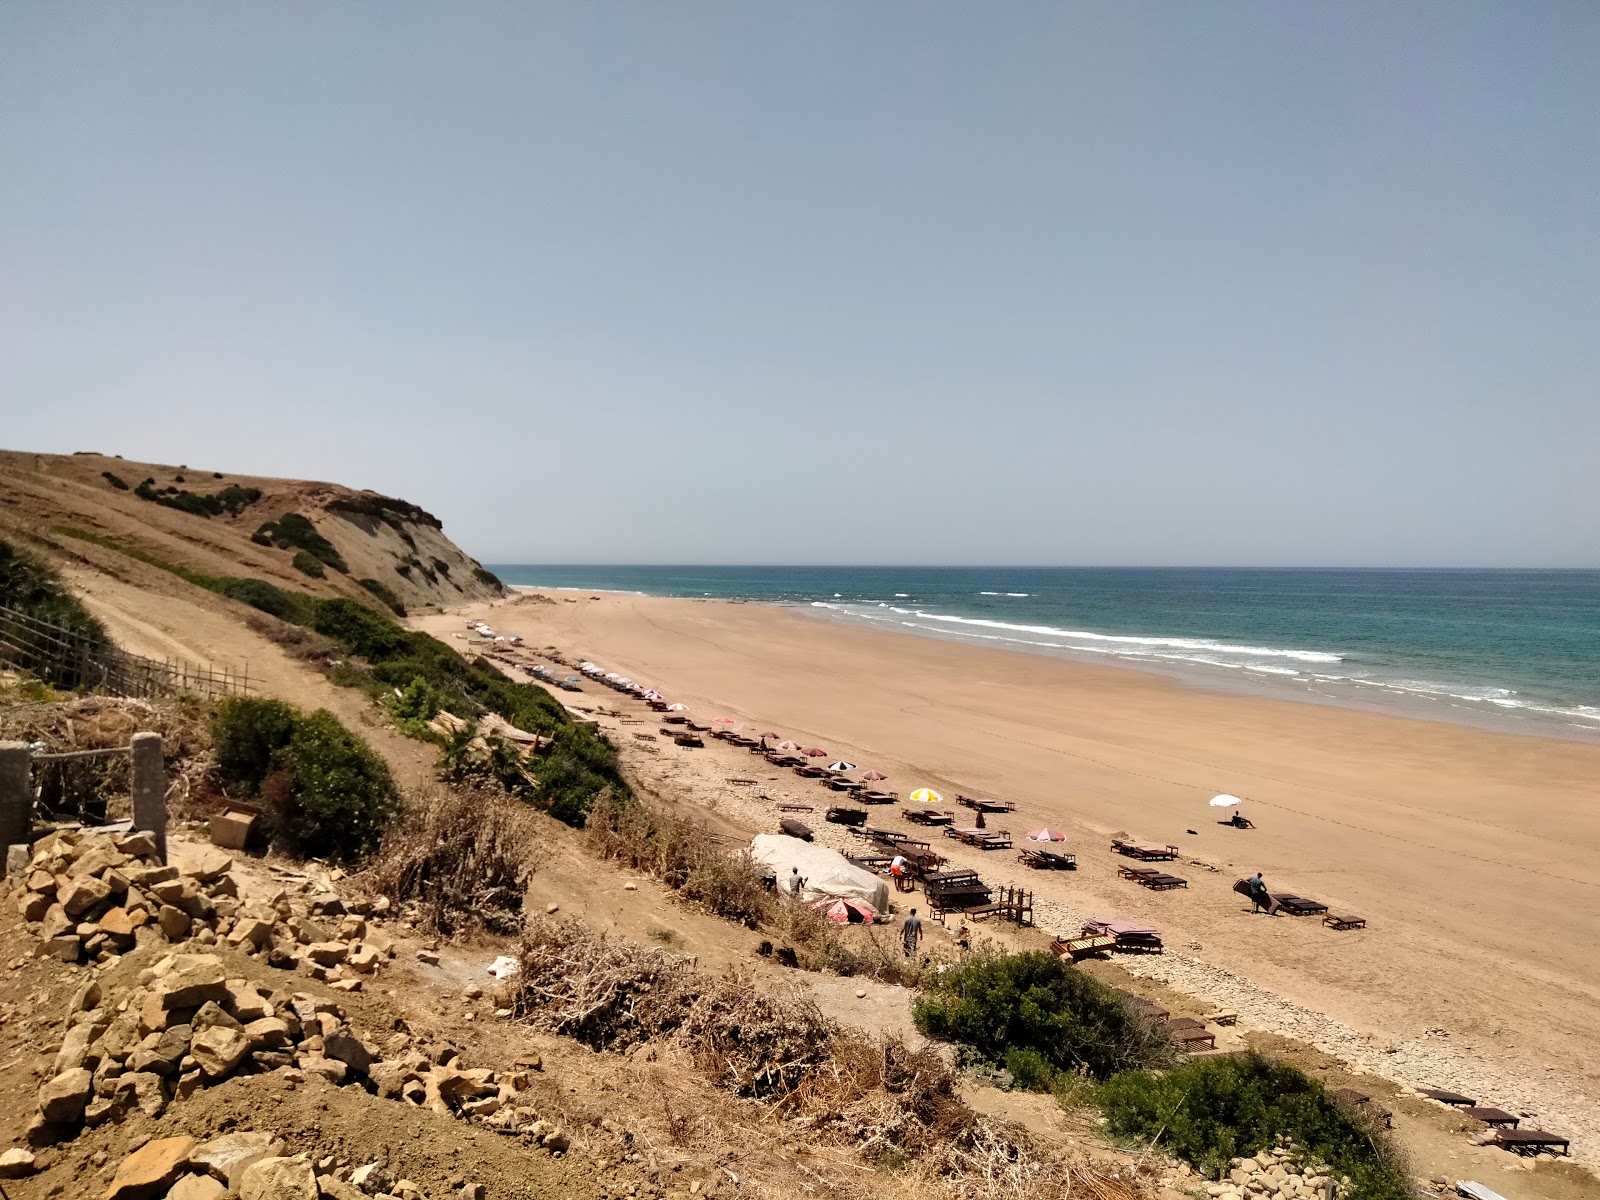 Zdjęcie Plage Sidi Mghayet z powierzchnią jasny, drobny piasek